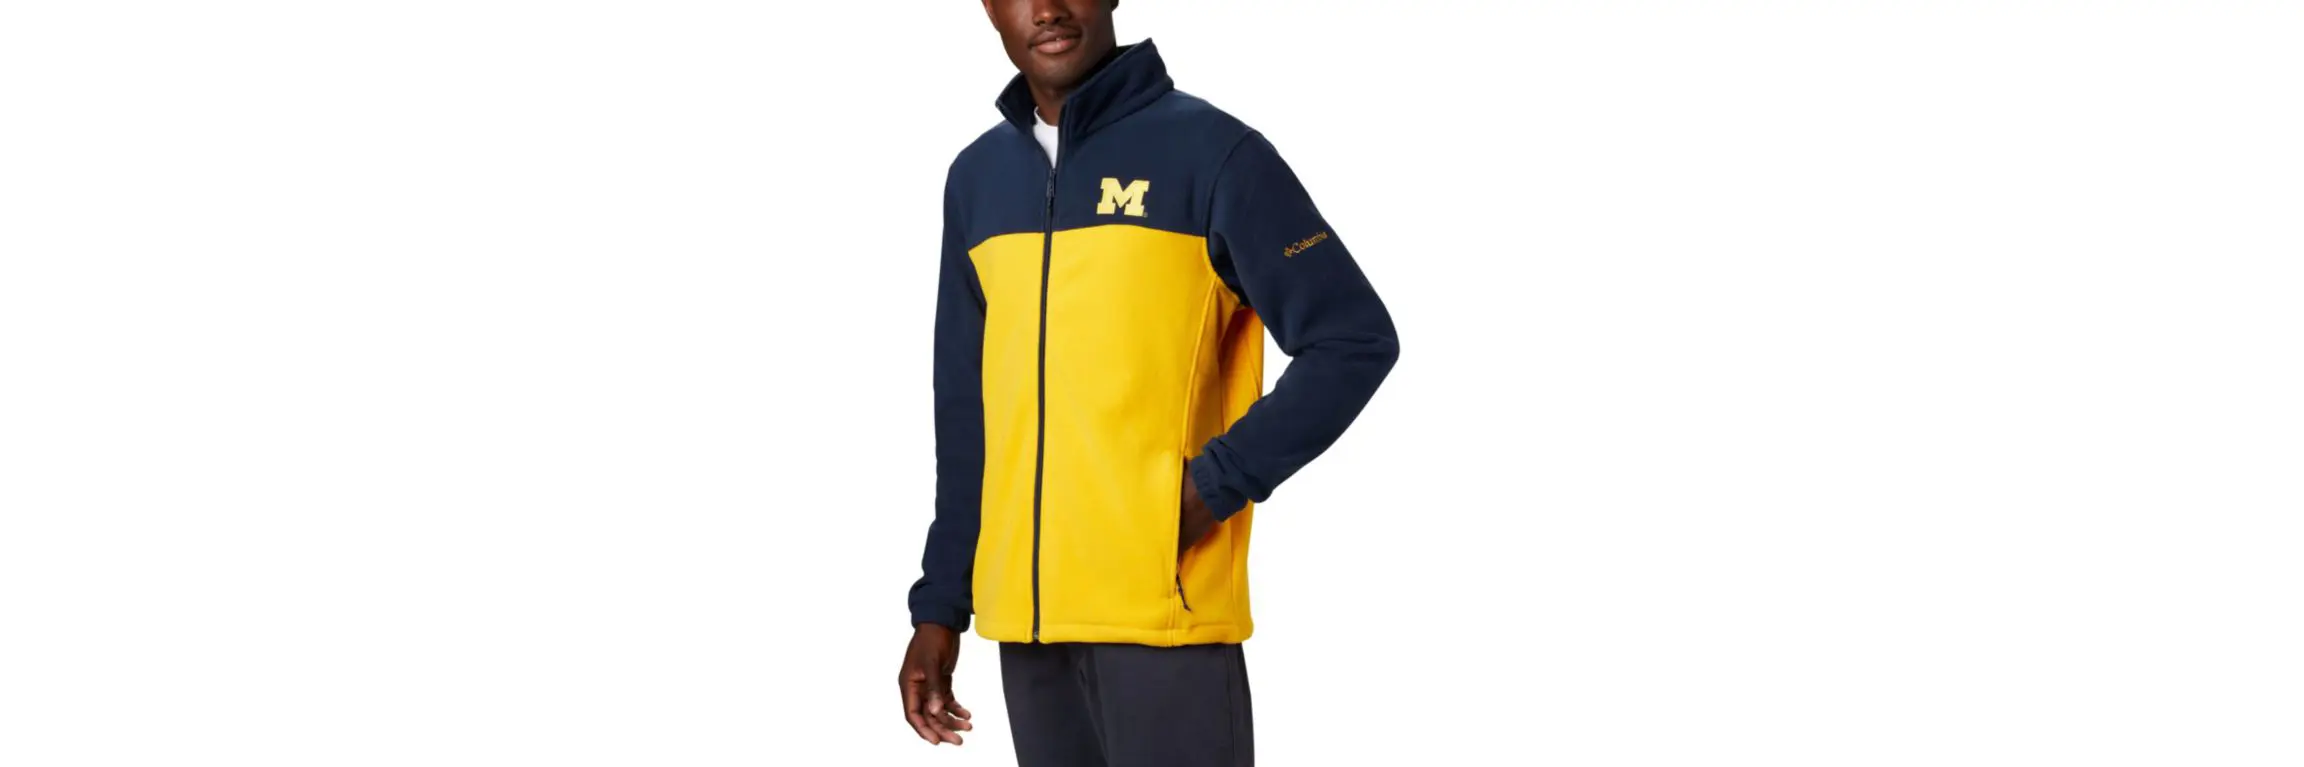 Columbia Men's Collegiate Flanker™ III Fleece Jacket - Tall - Michigan. 1